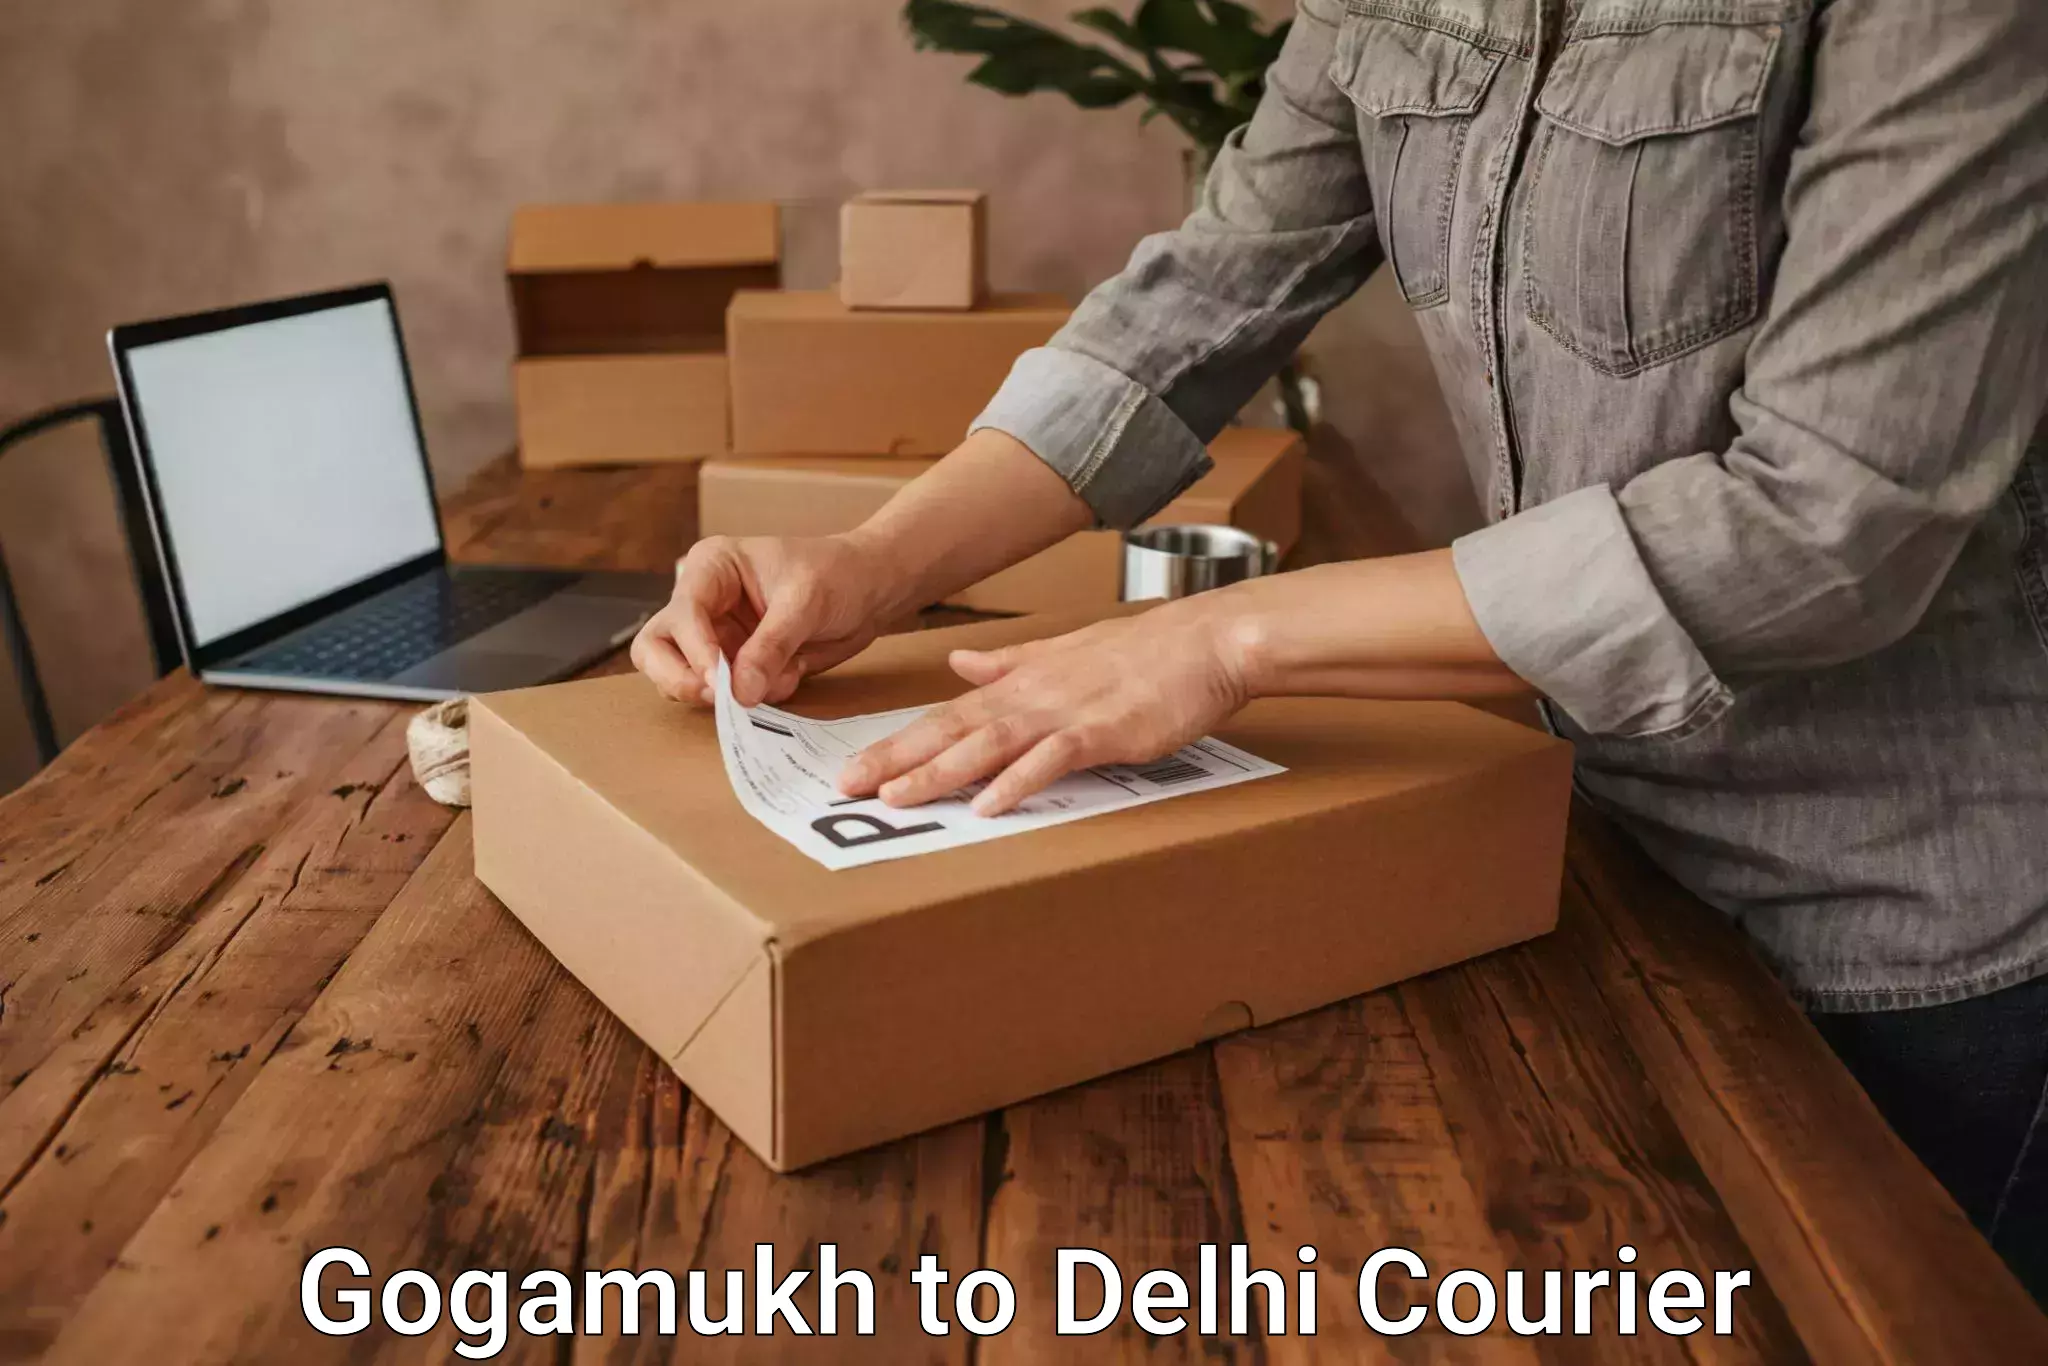 Efficient parcel delivery Gogamukh to Delhi